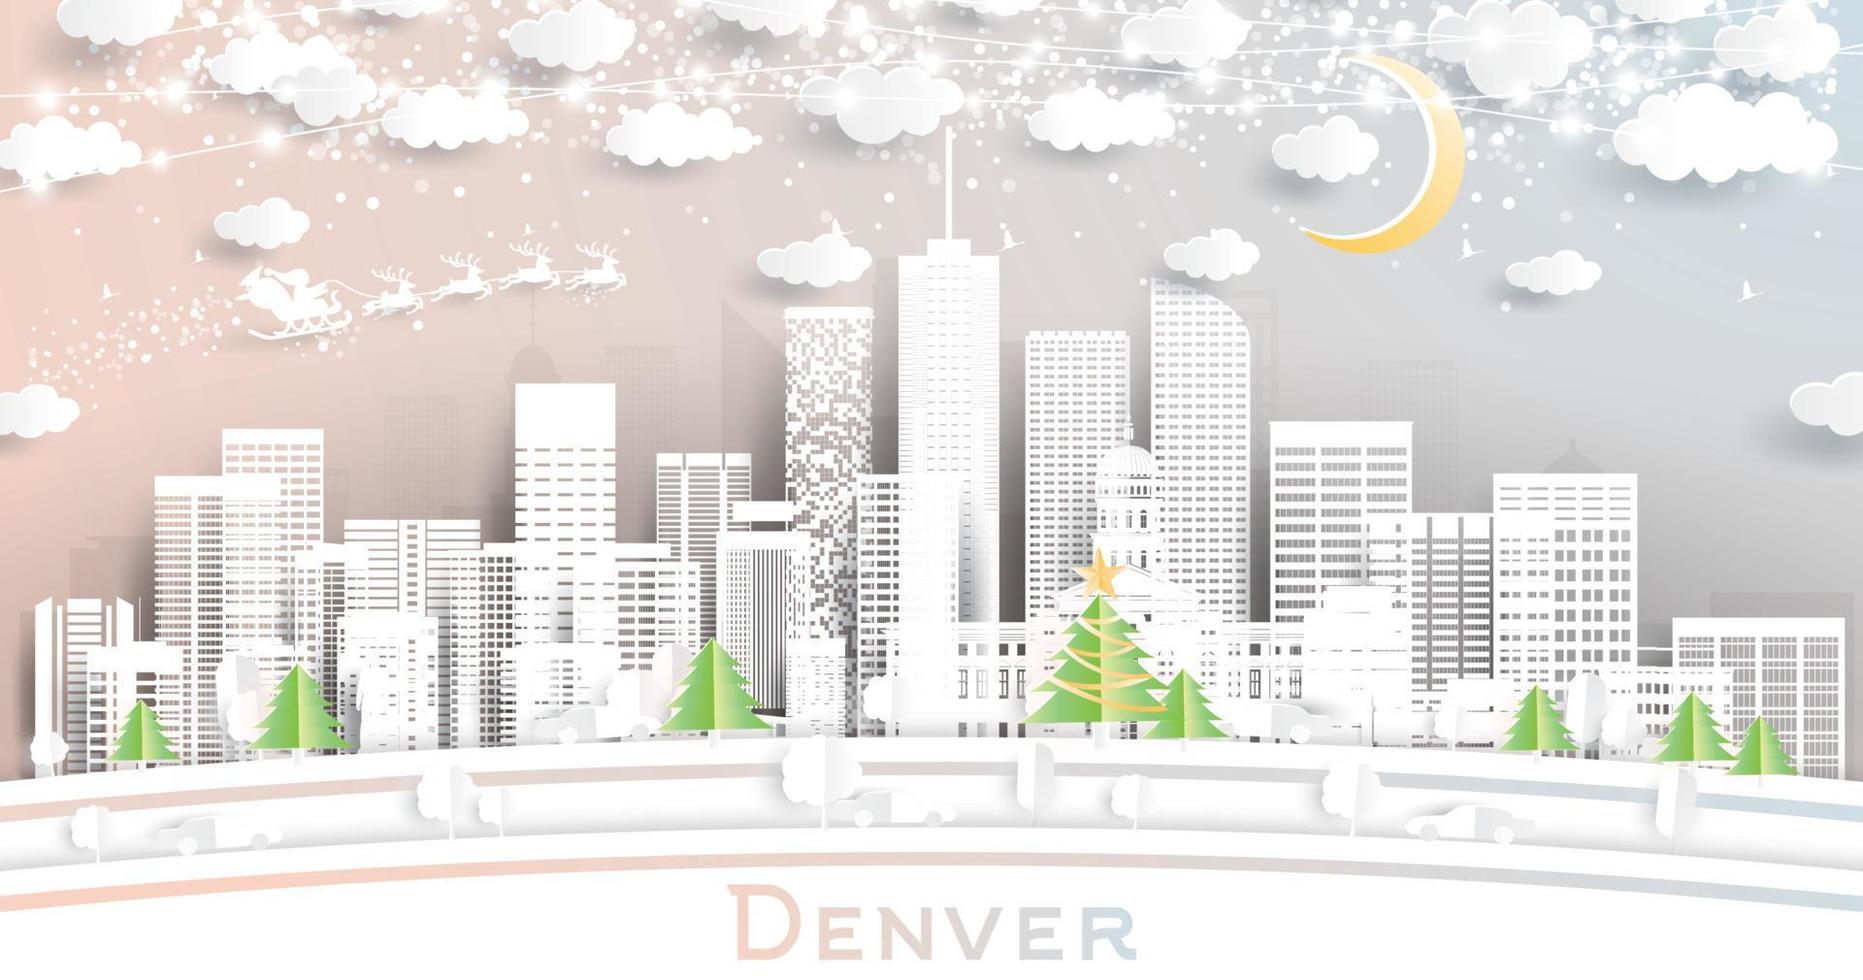 denver Colorado Verenigde Staten van Amerika stad horizon in papier besnoeiing stijl met sneeuwvlokken, maan en neon guirlande. vector